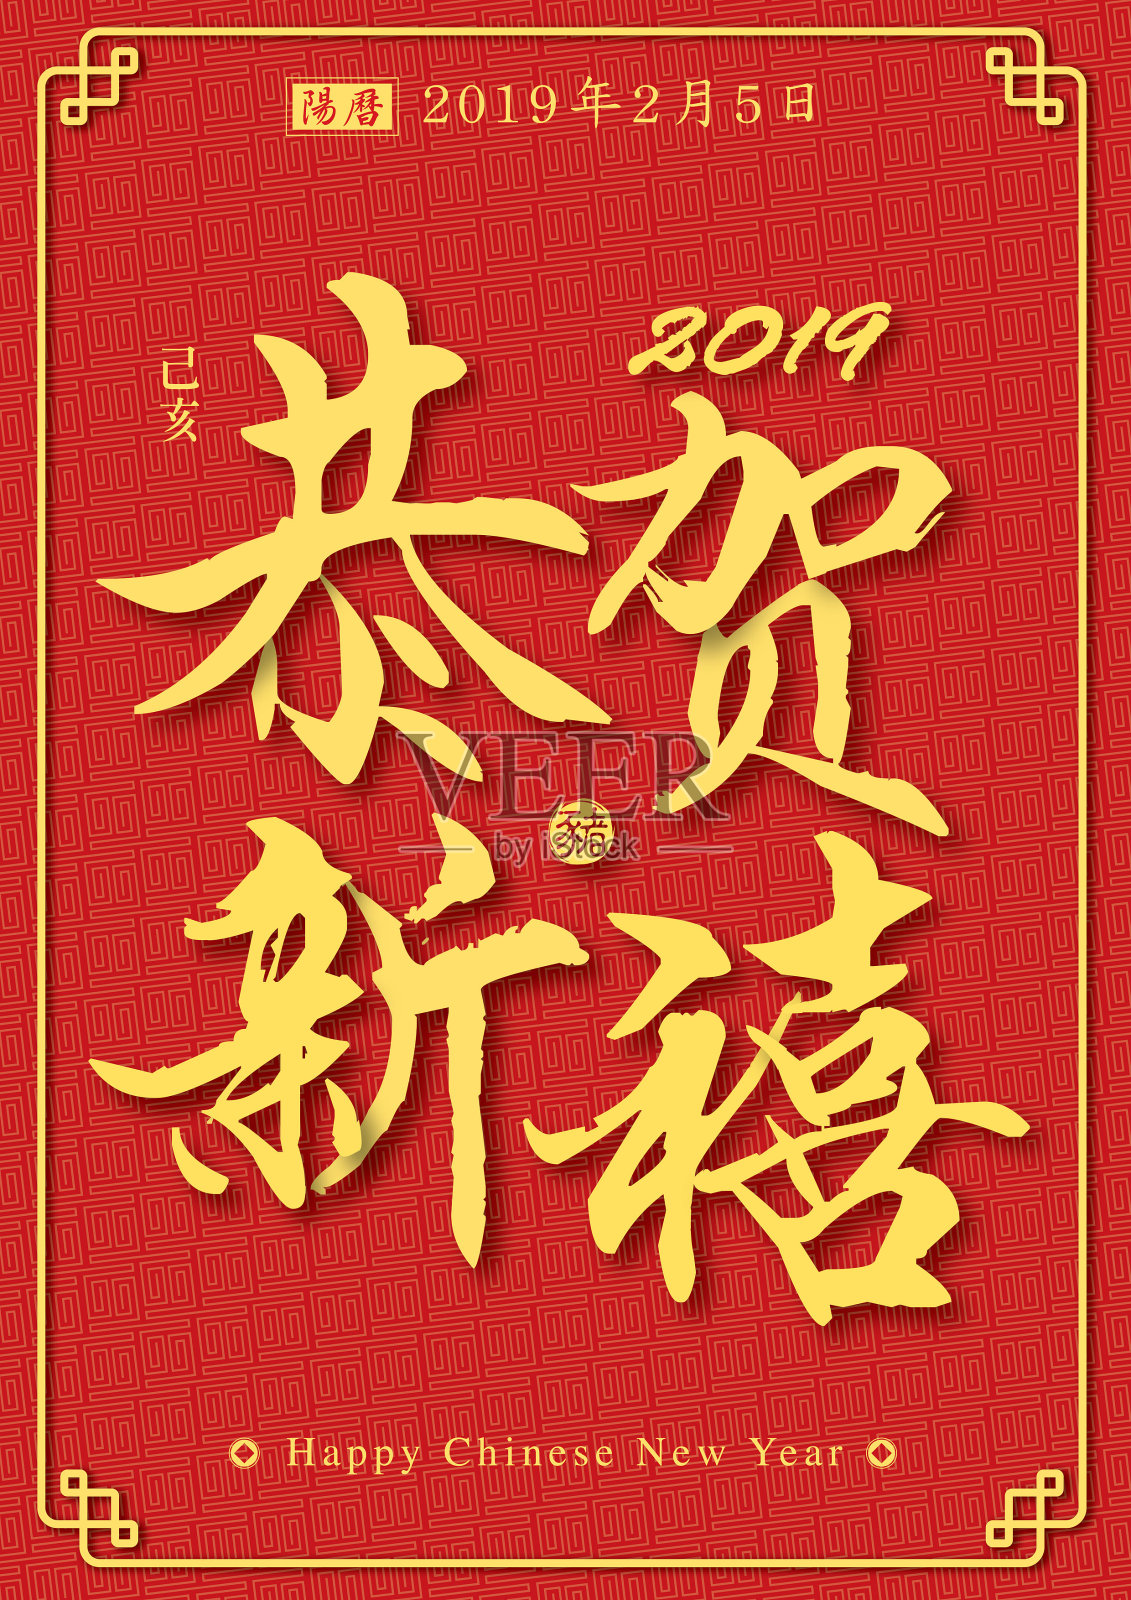 中国新年贺词海报载体设计模板素材